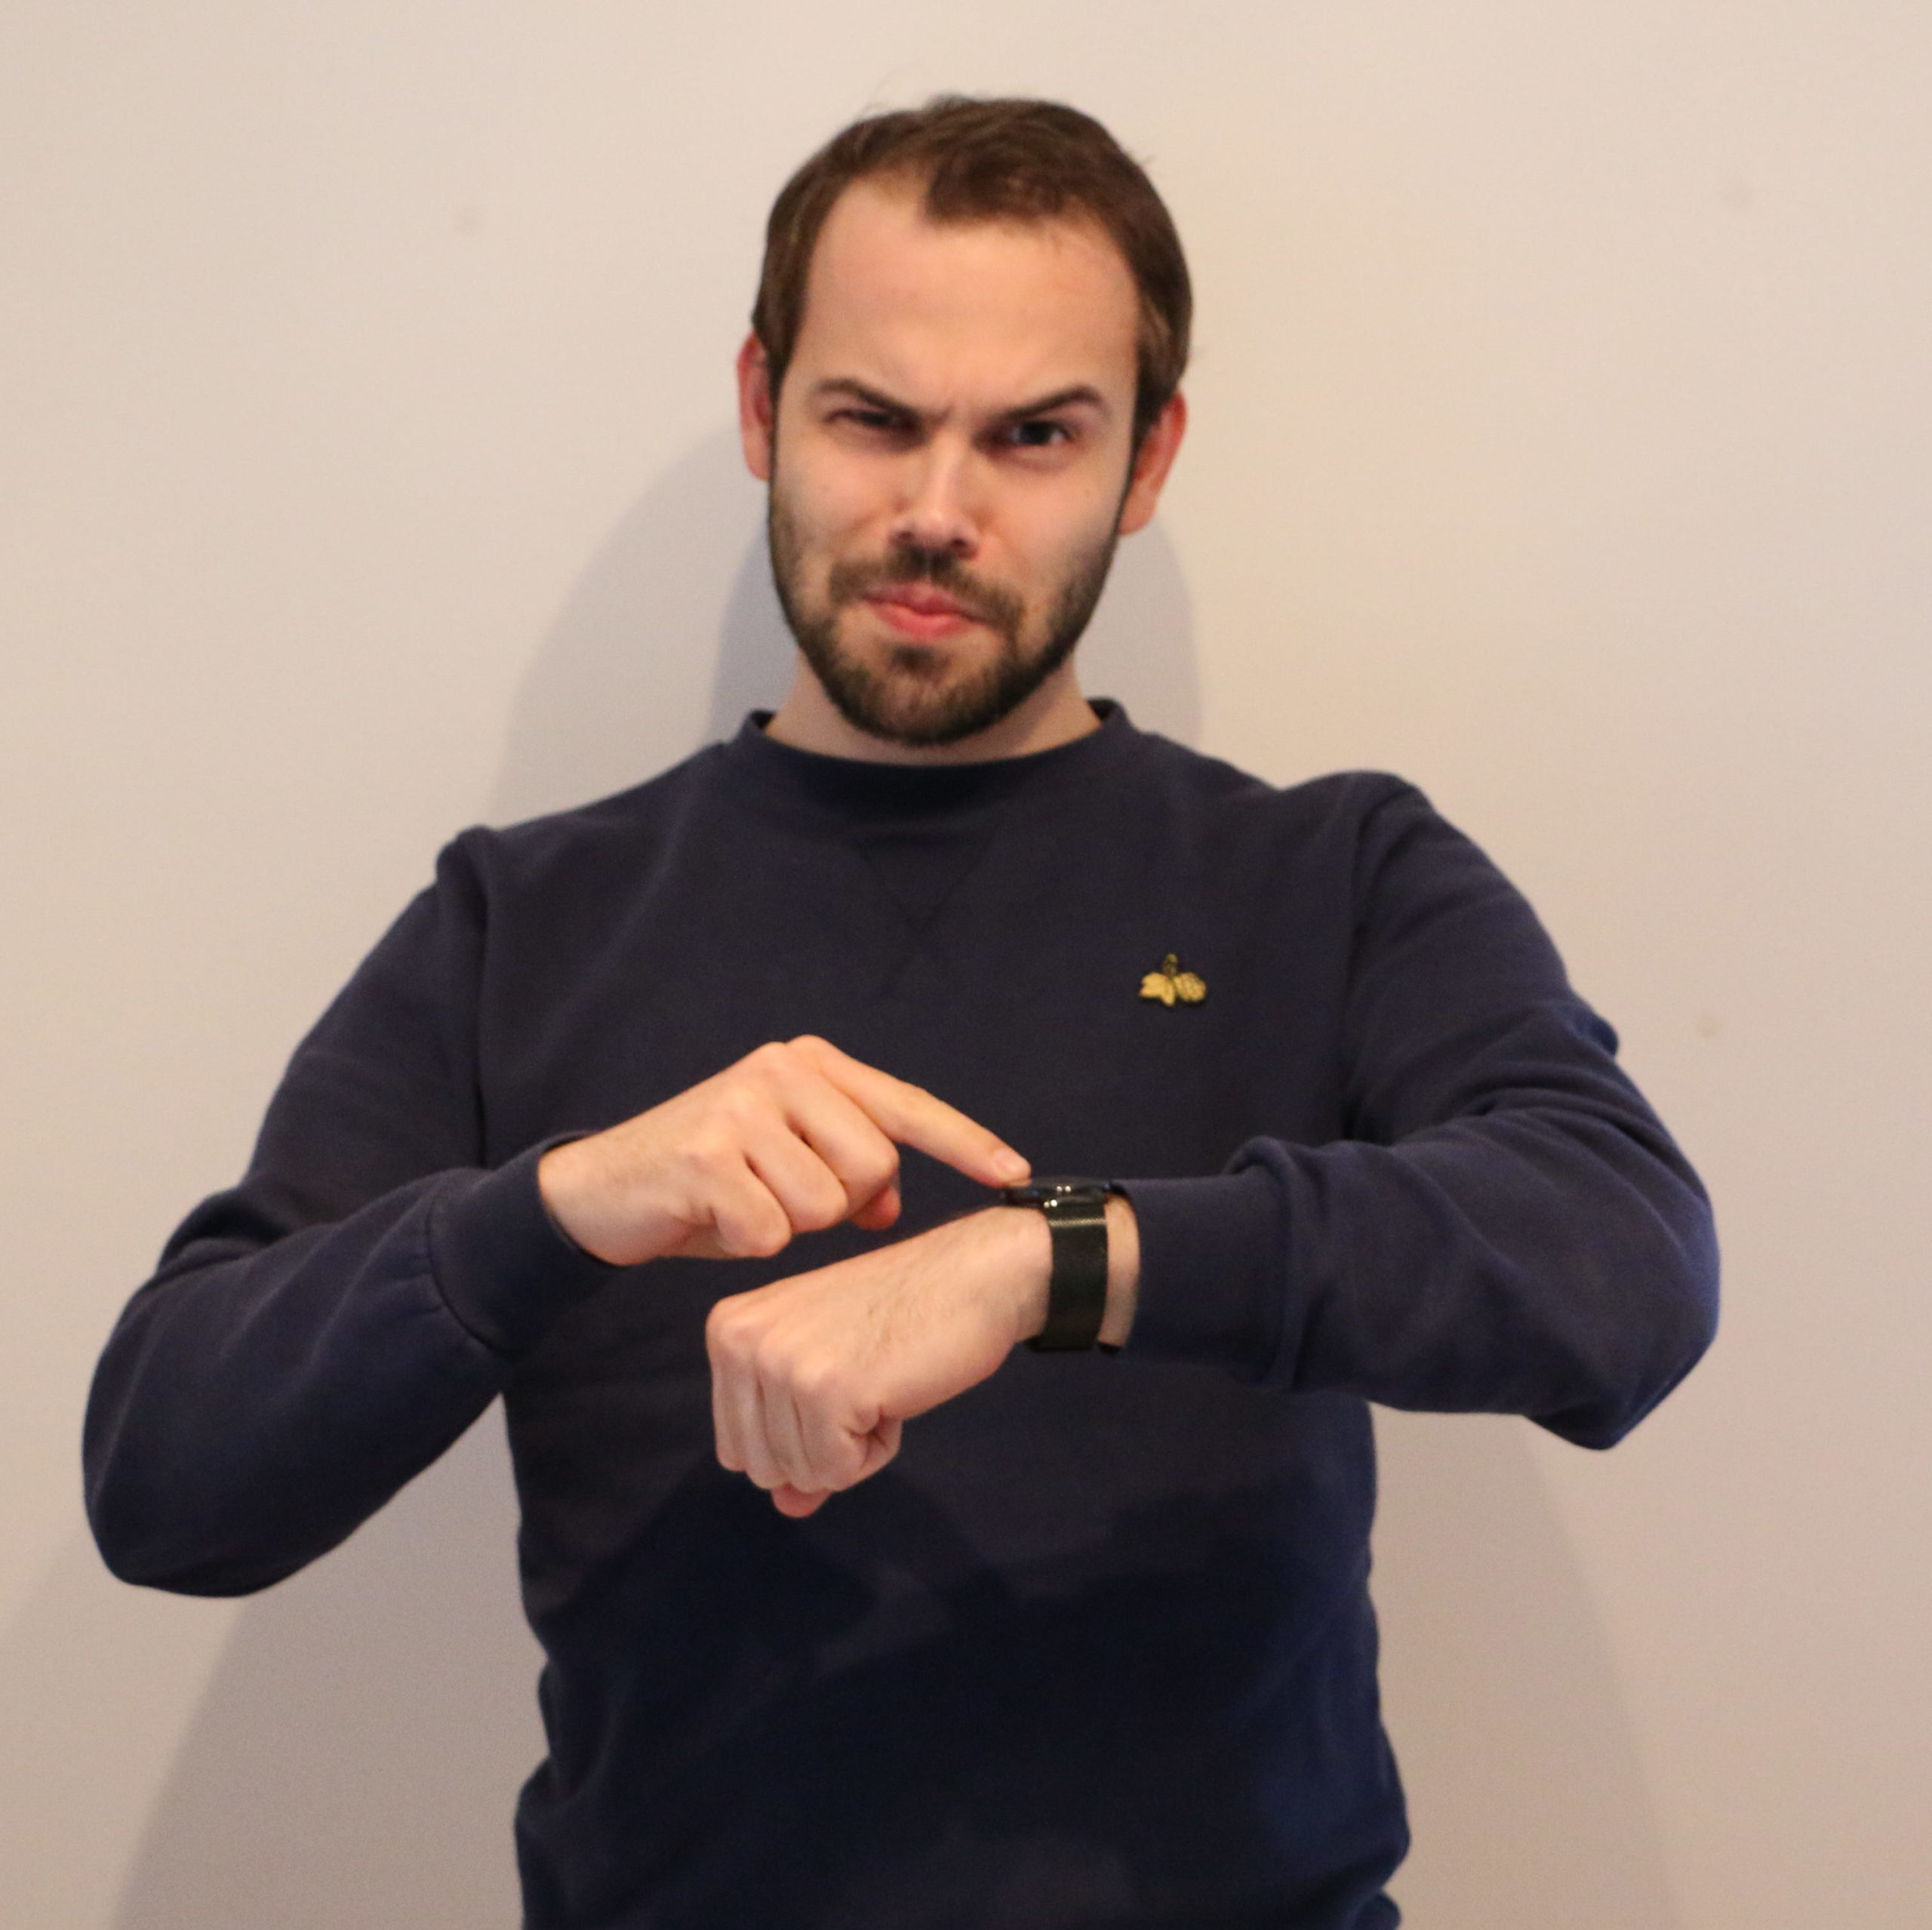 Benedikt Migge blickt grimmig-belustigt in die Kamera. Mit der rechten Hand zeigt er auf seine Armbanduhr.